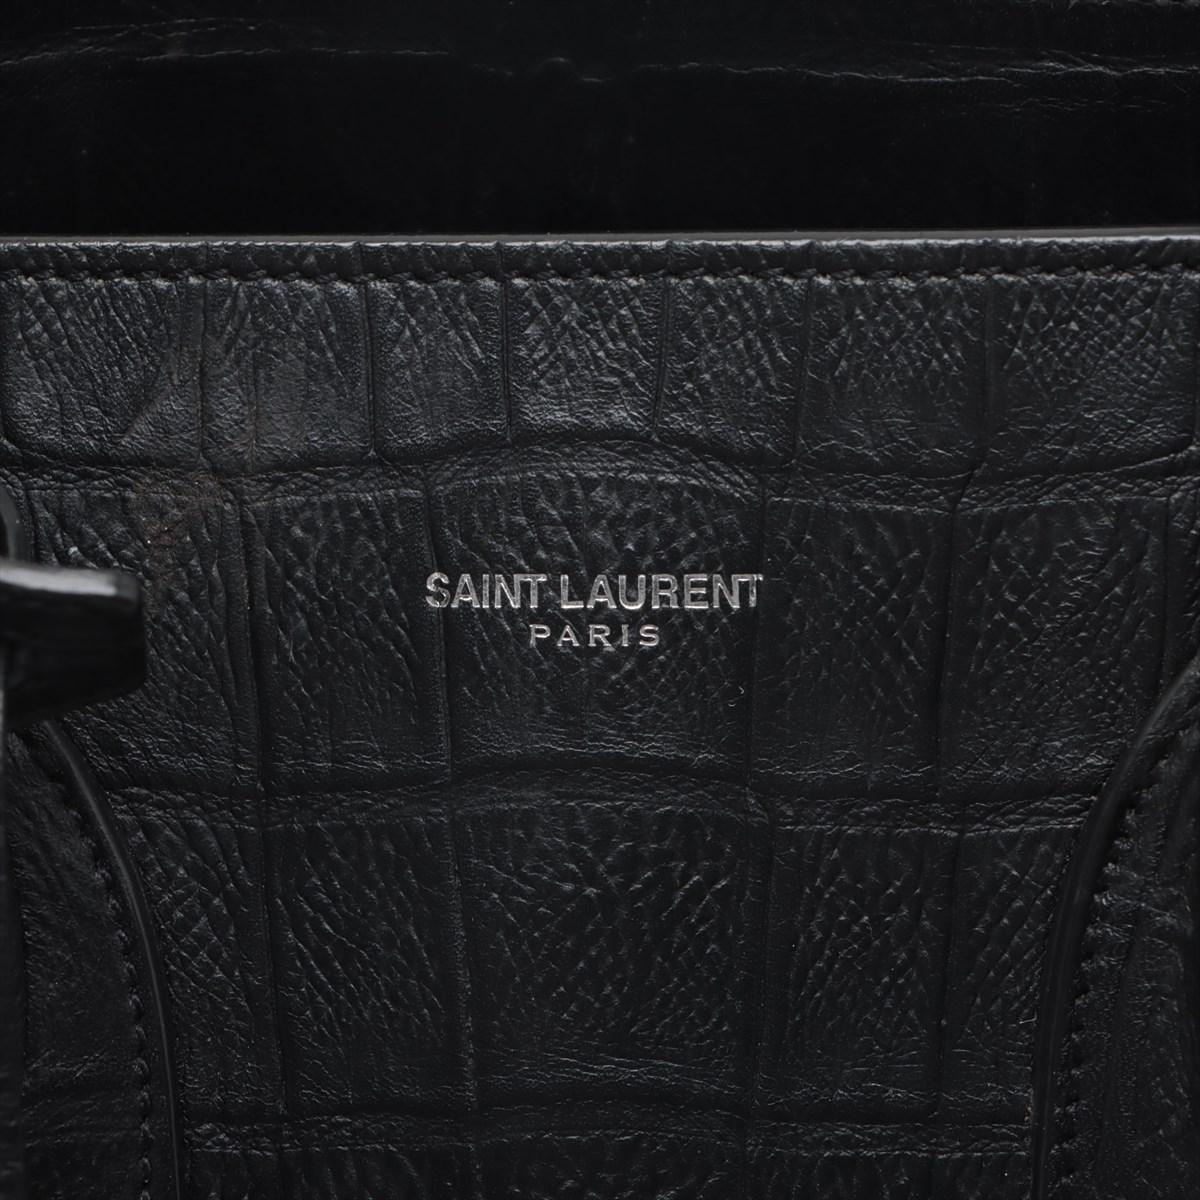 Saint Laurent Paris Sac de Jour Crocodile Embossed Leather Two-Way Handbag Black 10